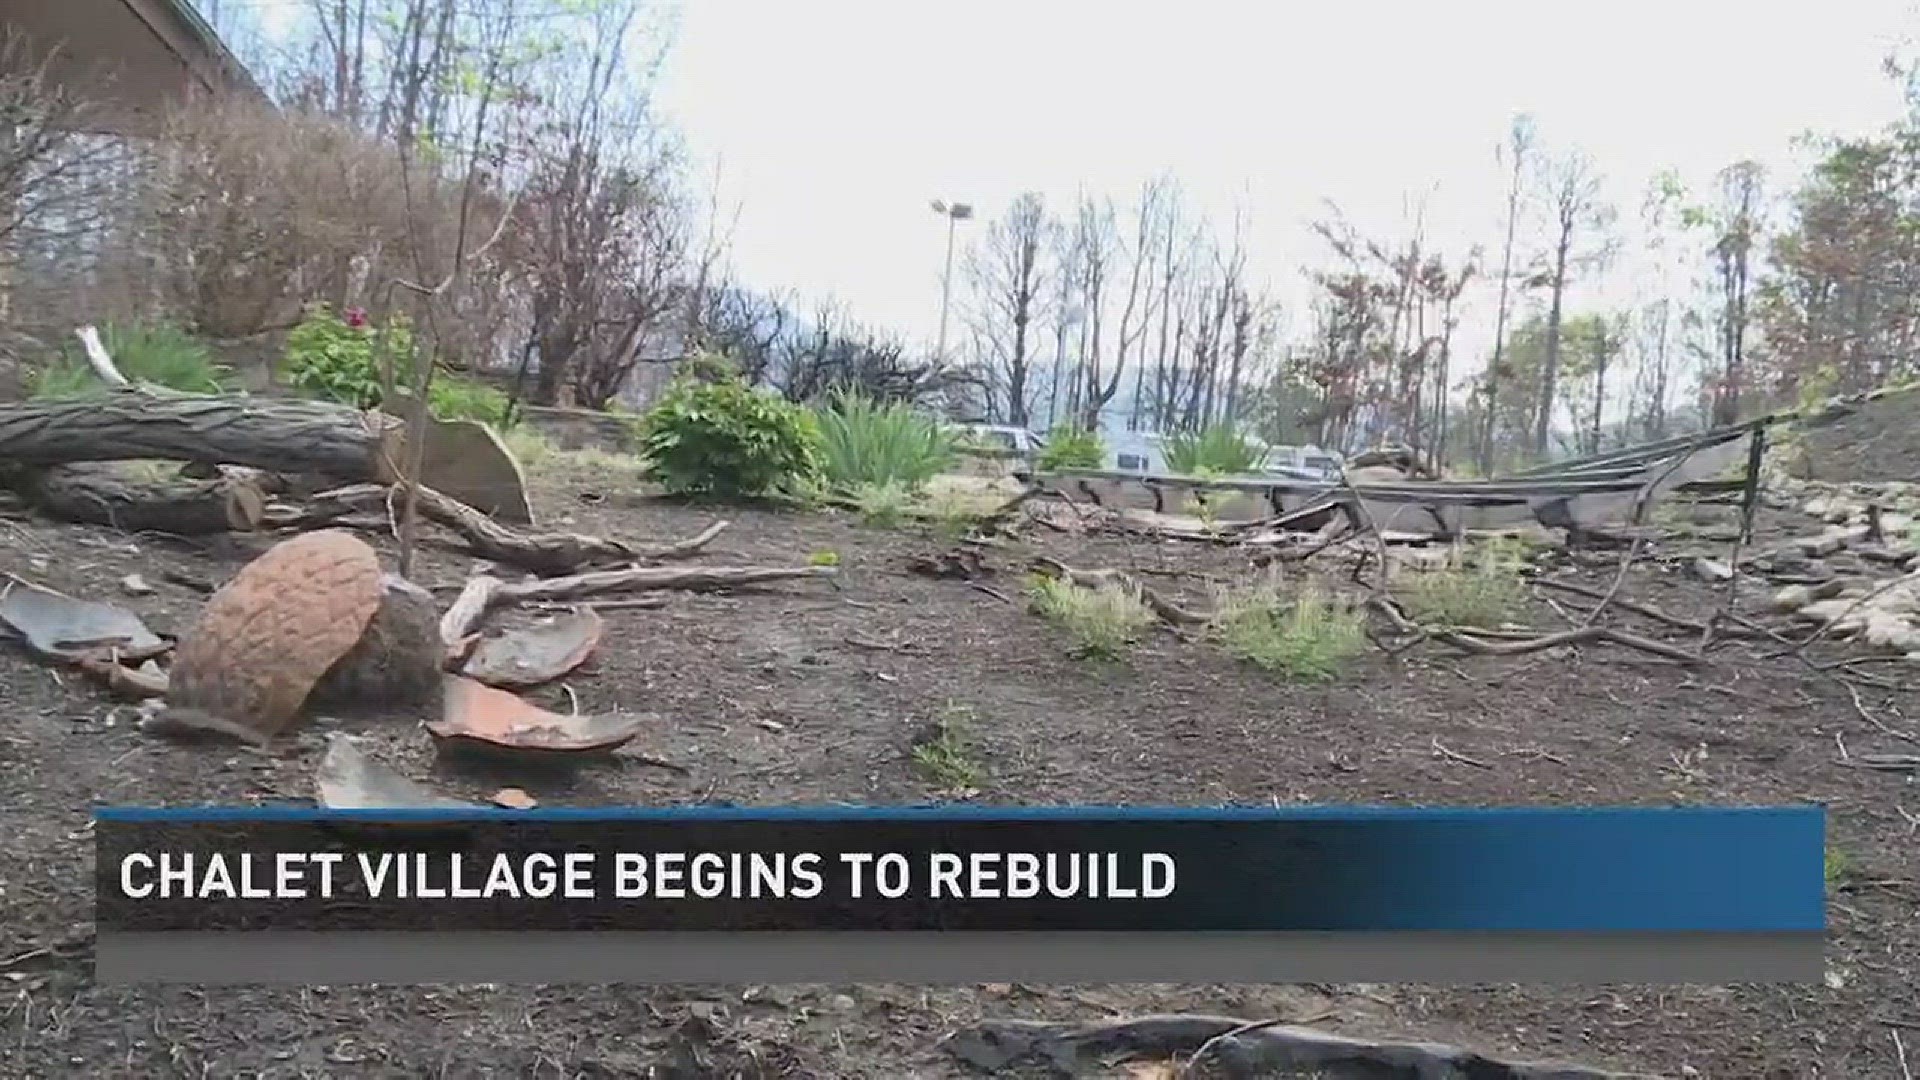 April 28, 2017: Five months after the Gatlinburg wildfires, a number of homes have begun rebuilding in Chalet Village.